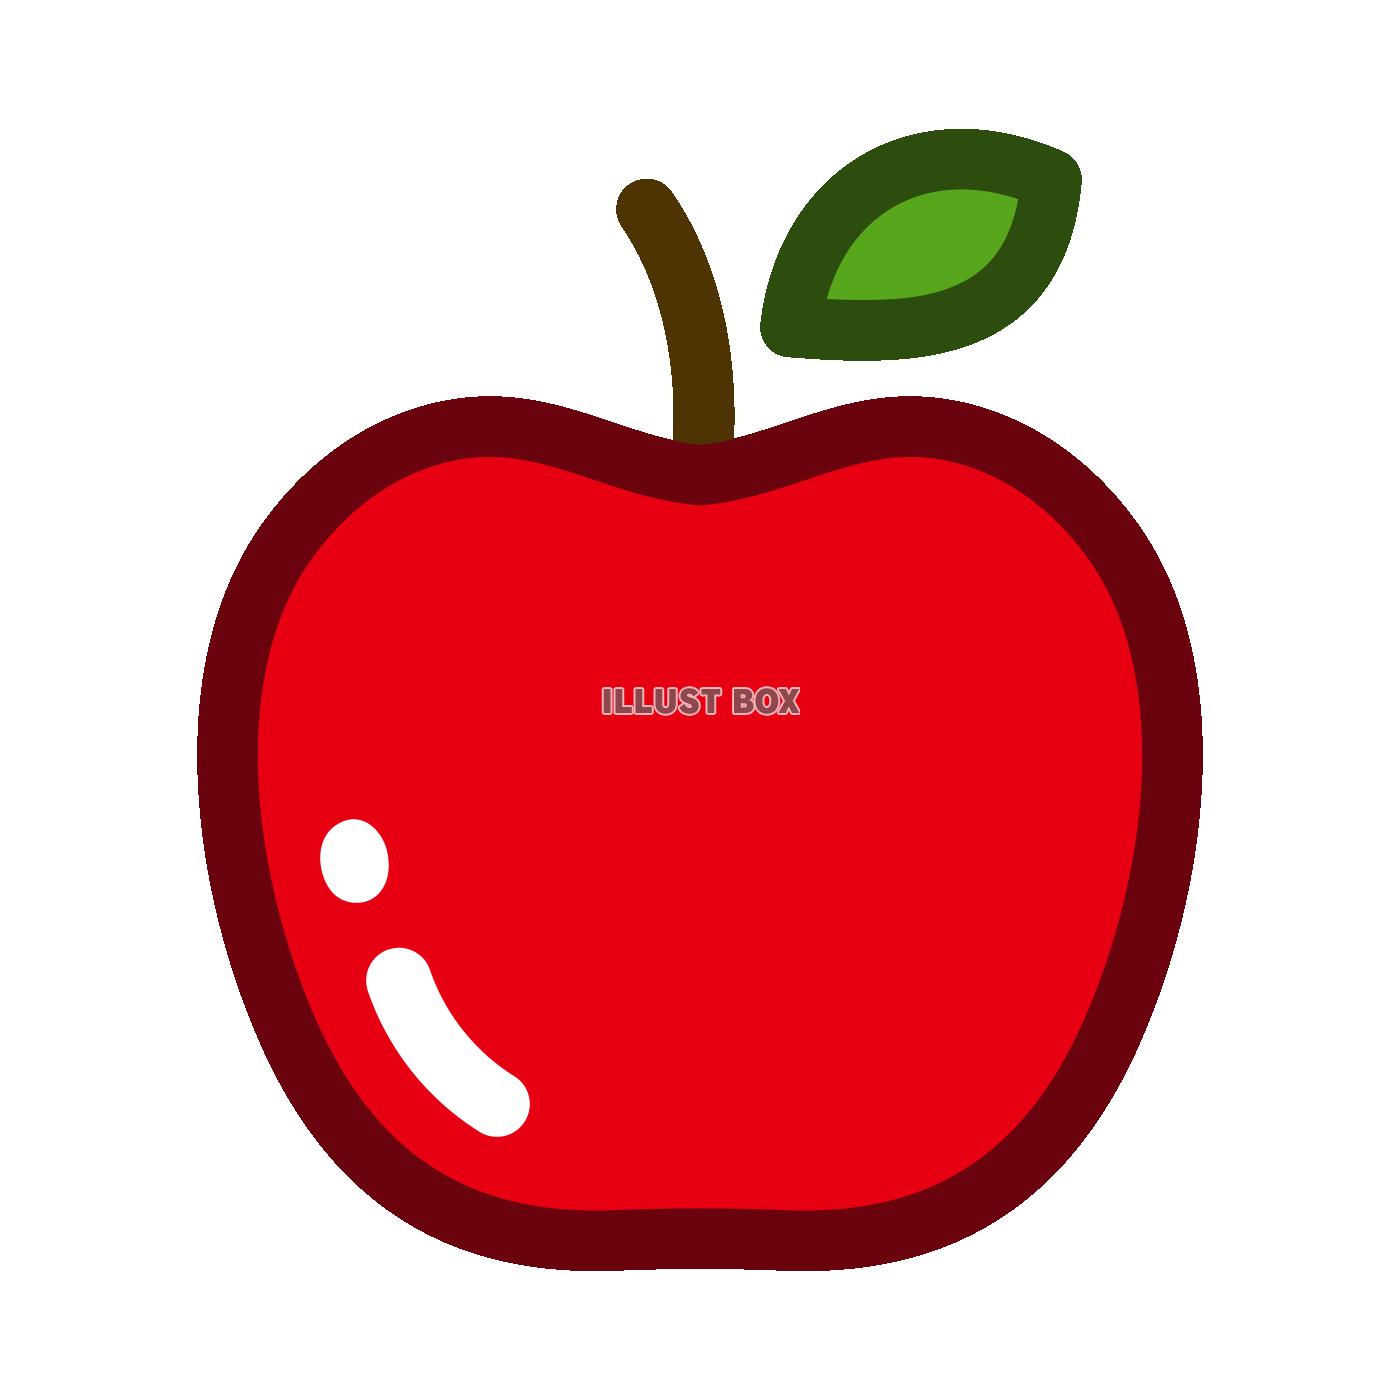 りんごのシンプルなイラスト